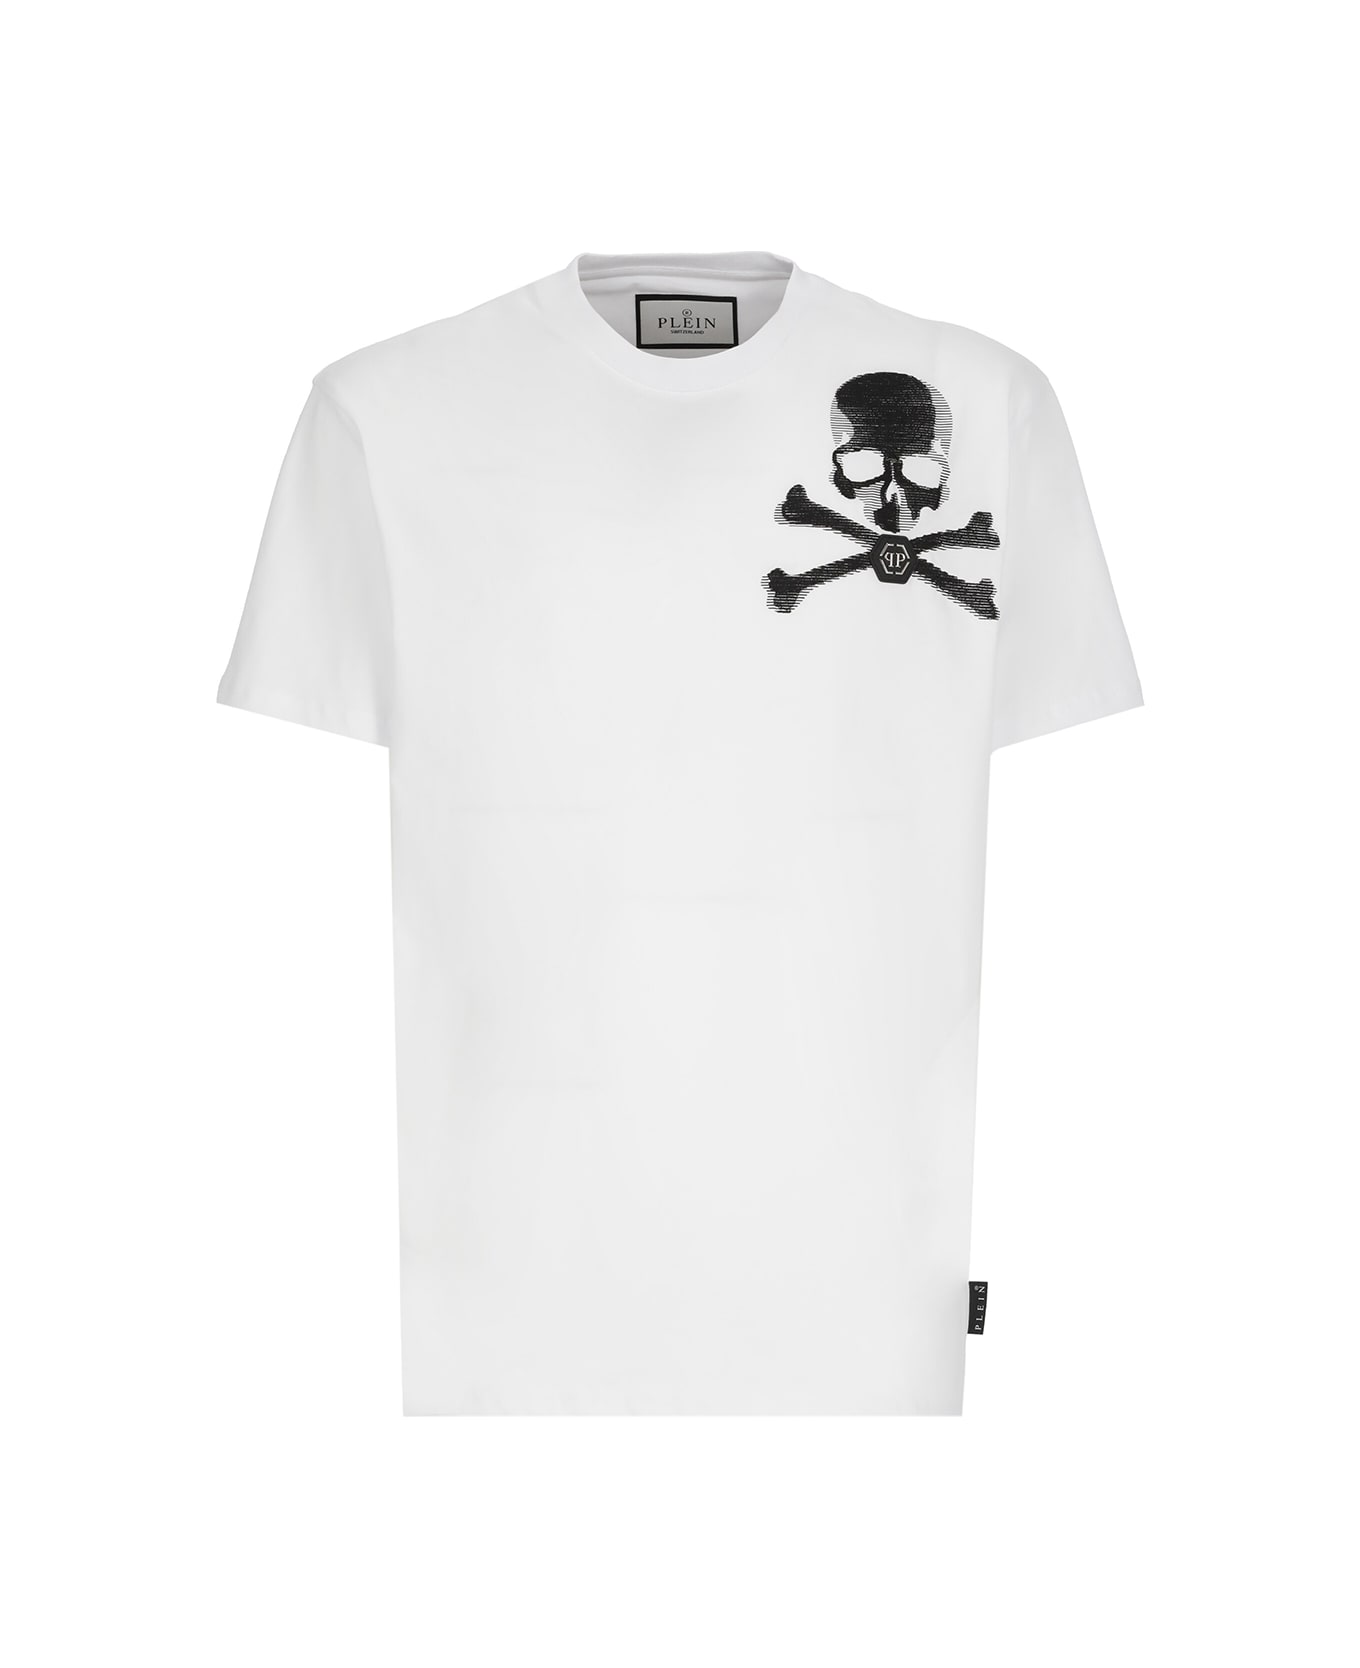 Philipp Plein Skull And Bones T-shirt - White シャツ